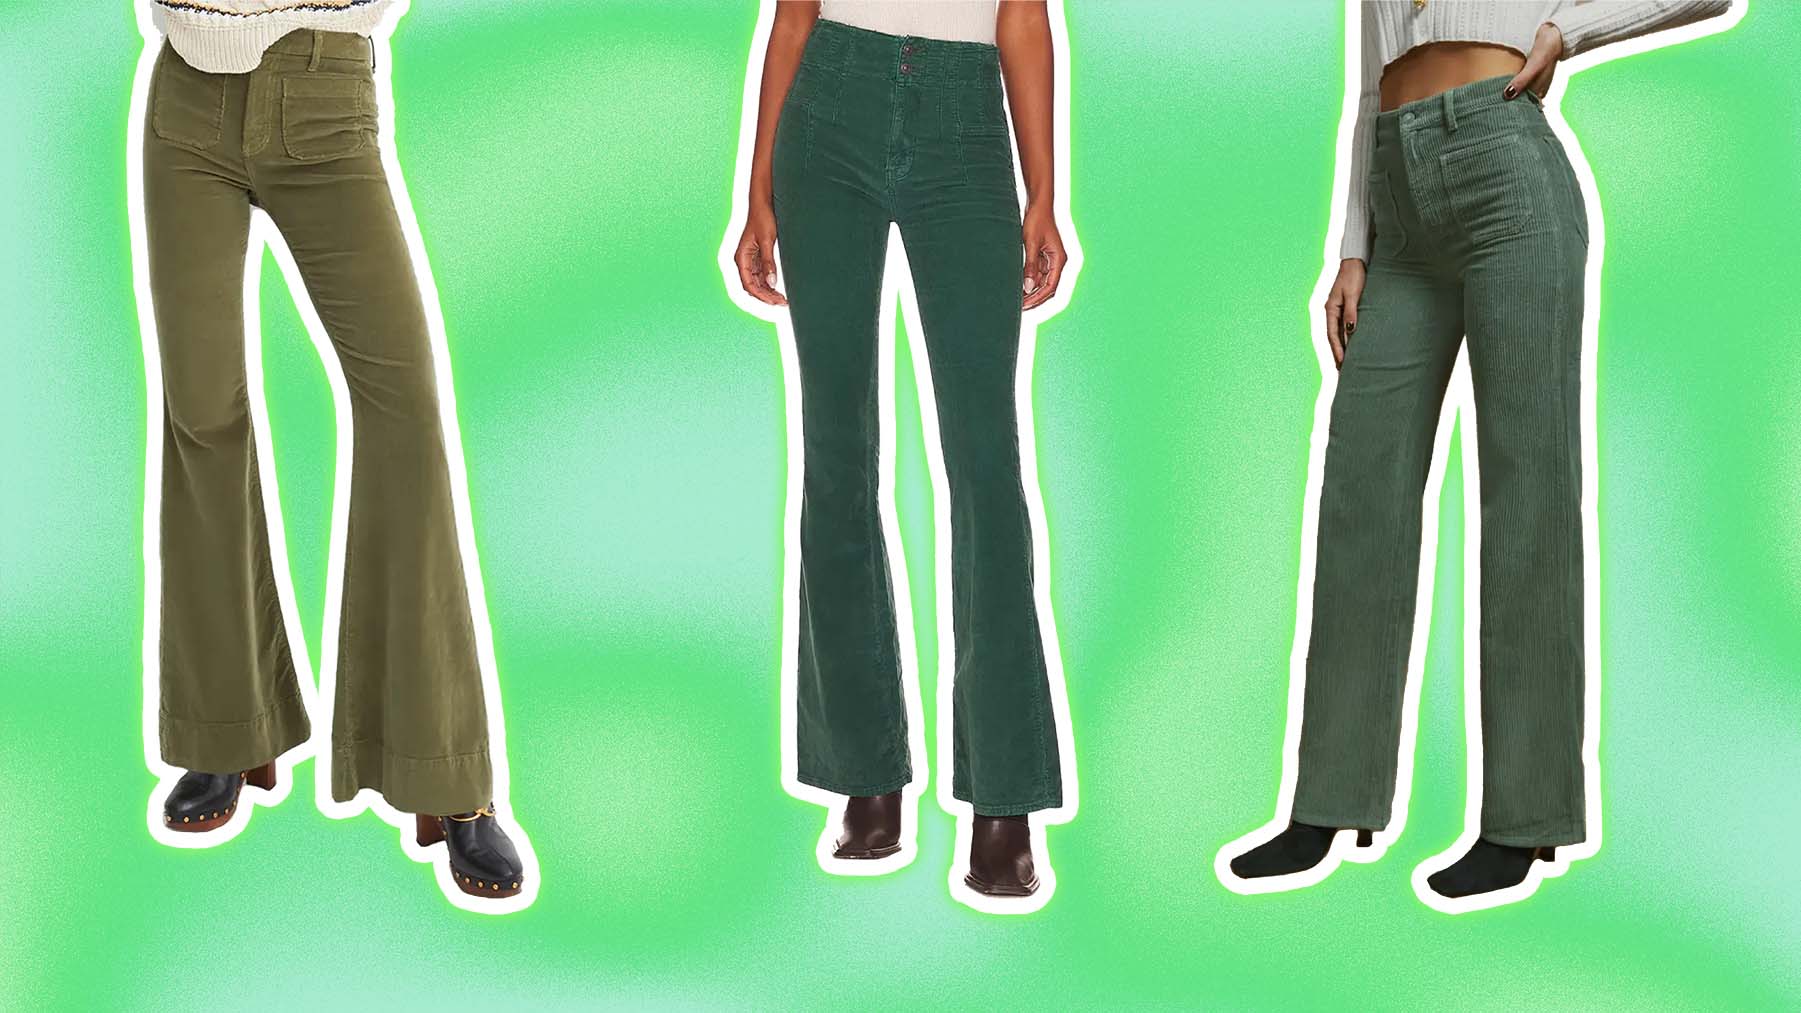 Corduroy pants: High Waisted Green Corduroy pants